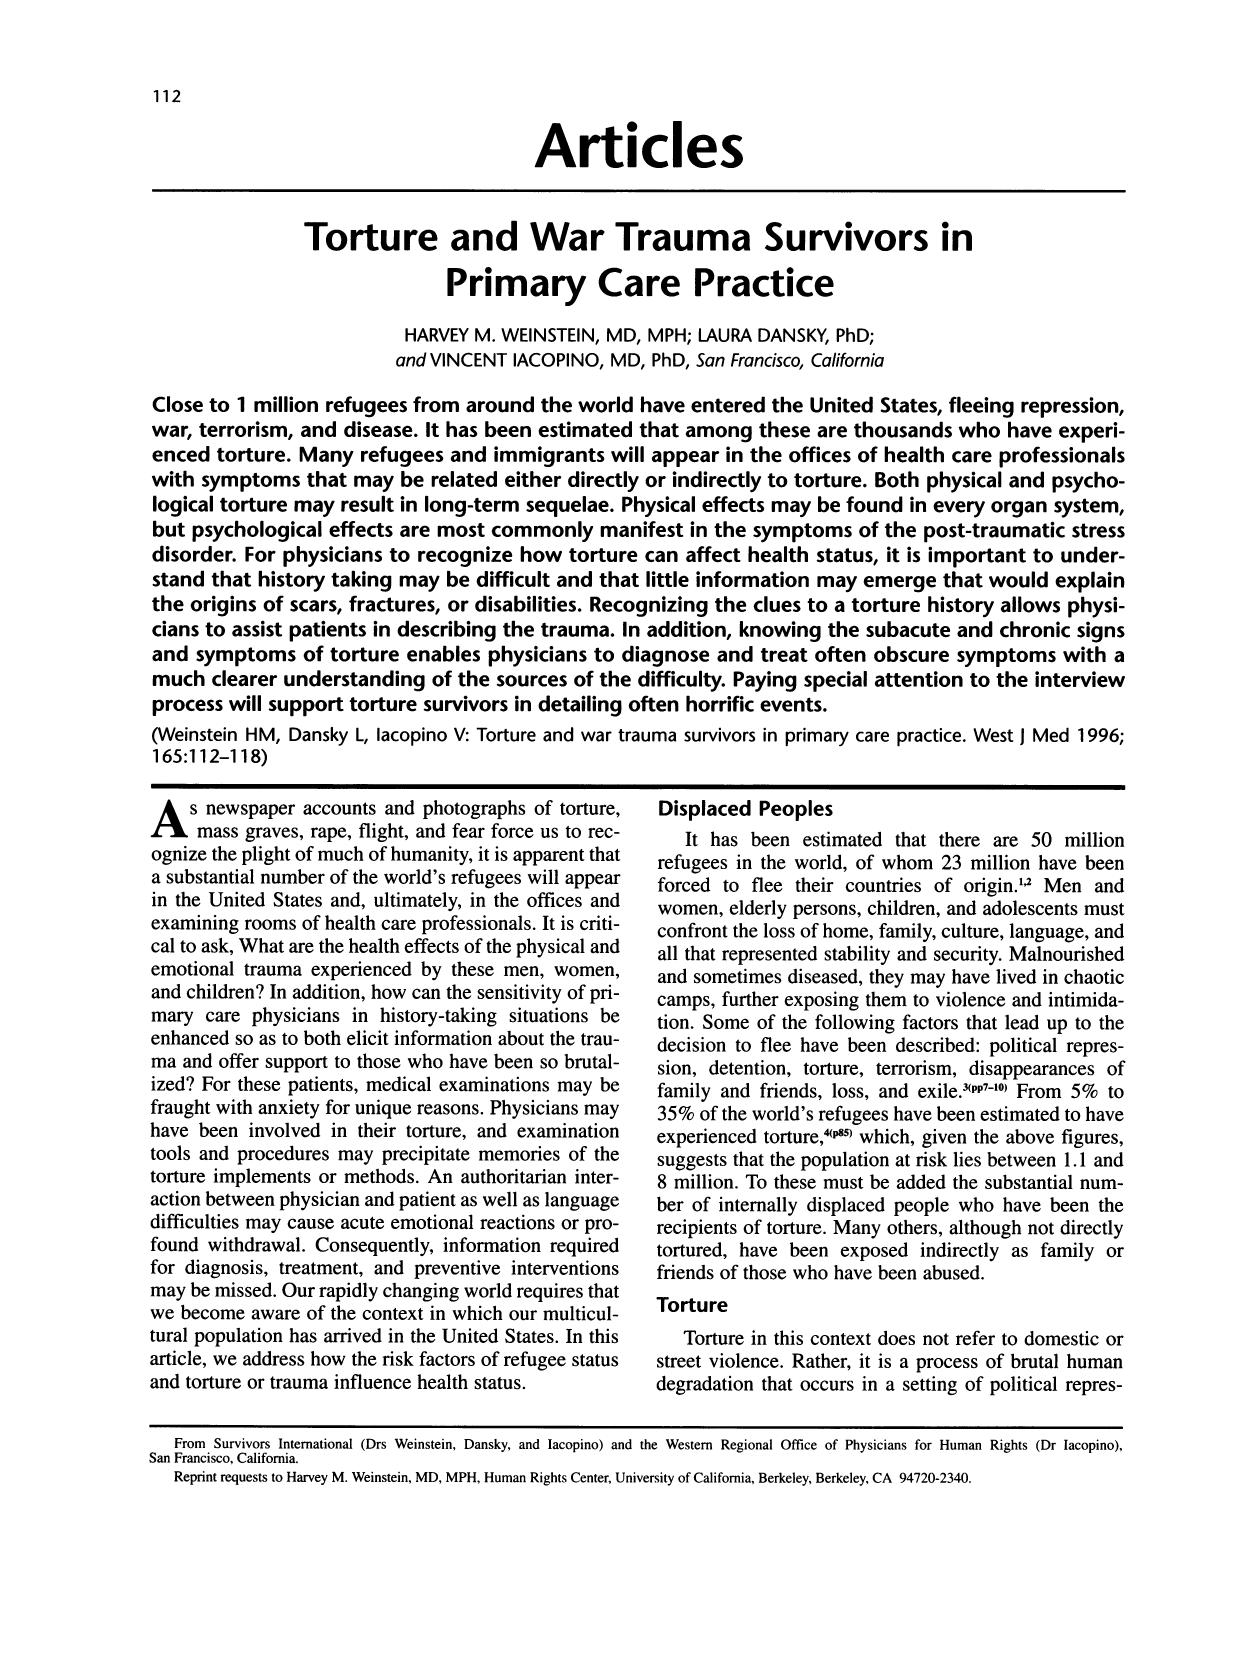 Torture and War Trauma Survivors-1